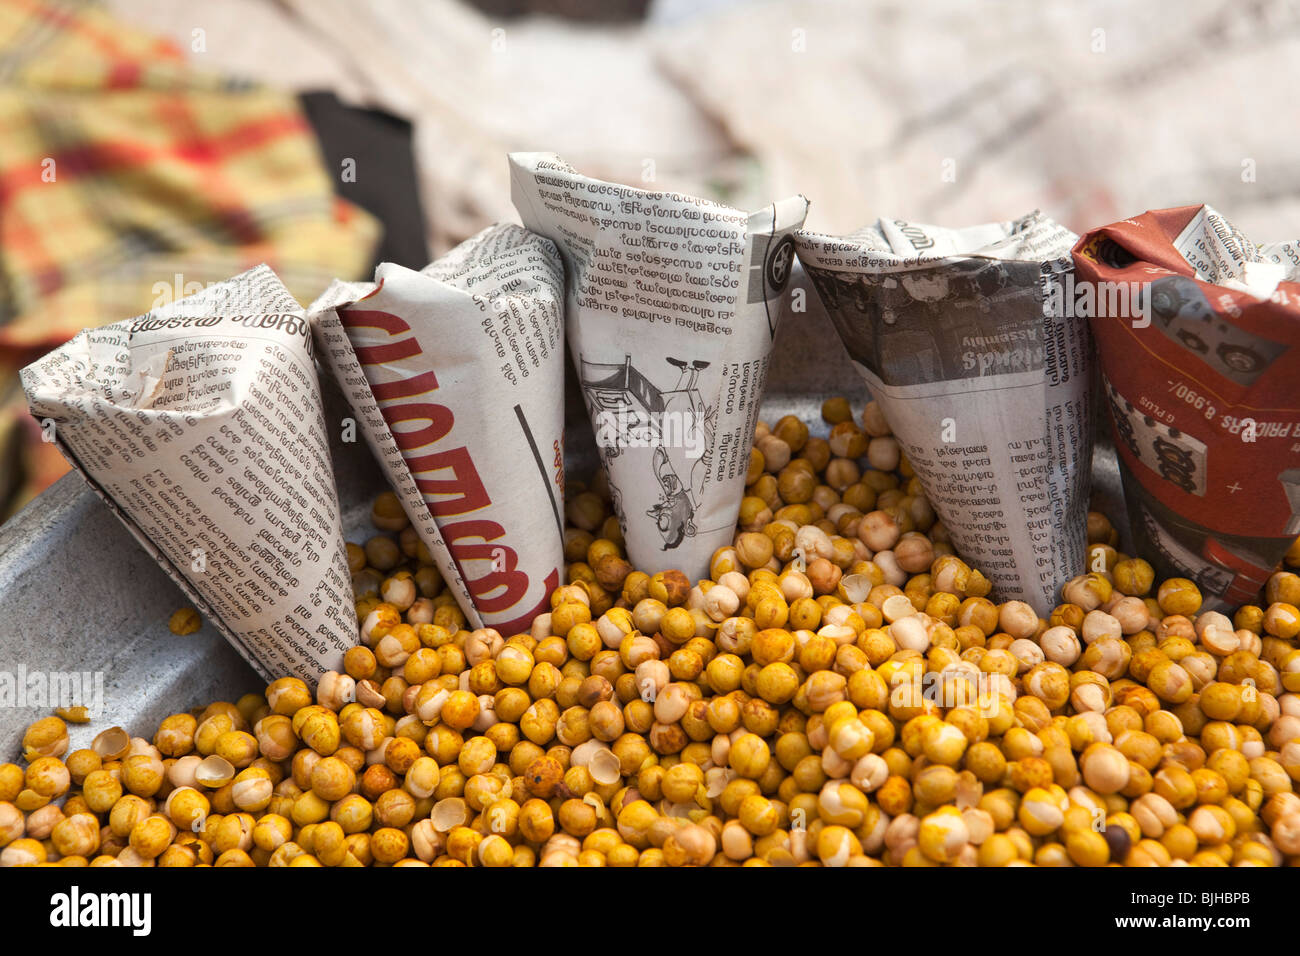 India, Kerala, Kanjiramattom Kodikuthu Moslem festival, snack stall, packets of roasted channa dal (chick peas) Stock Photo